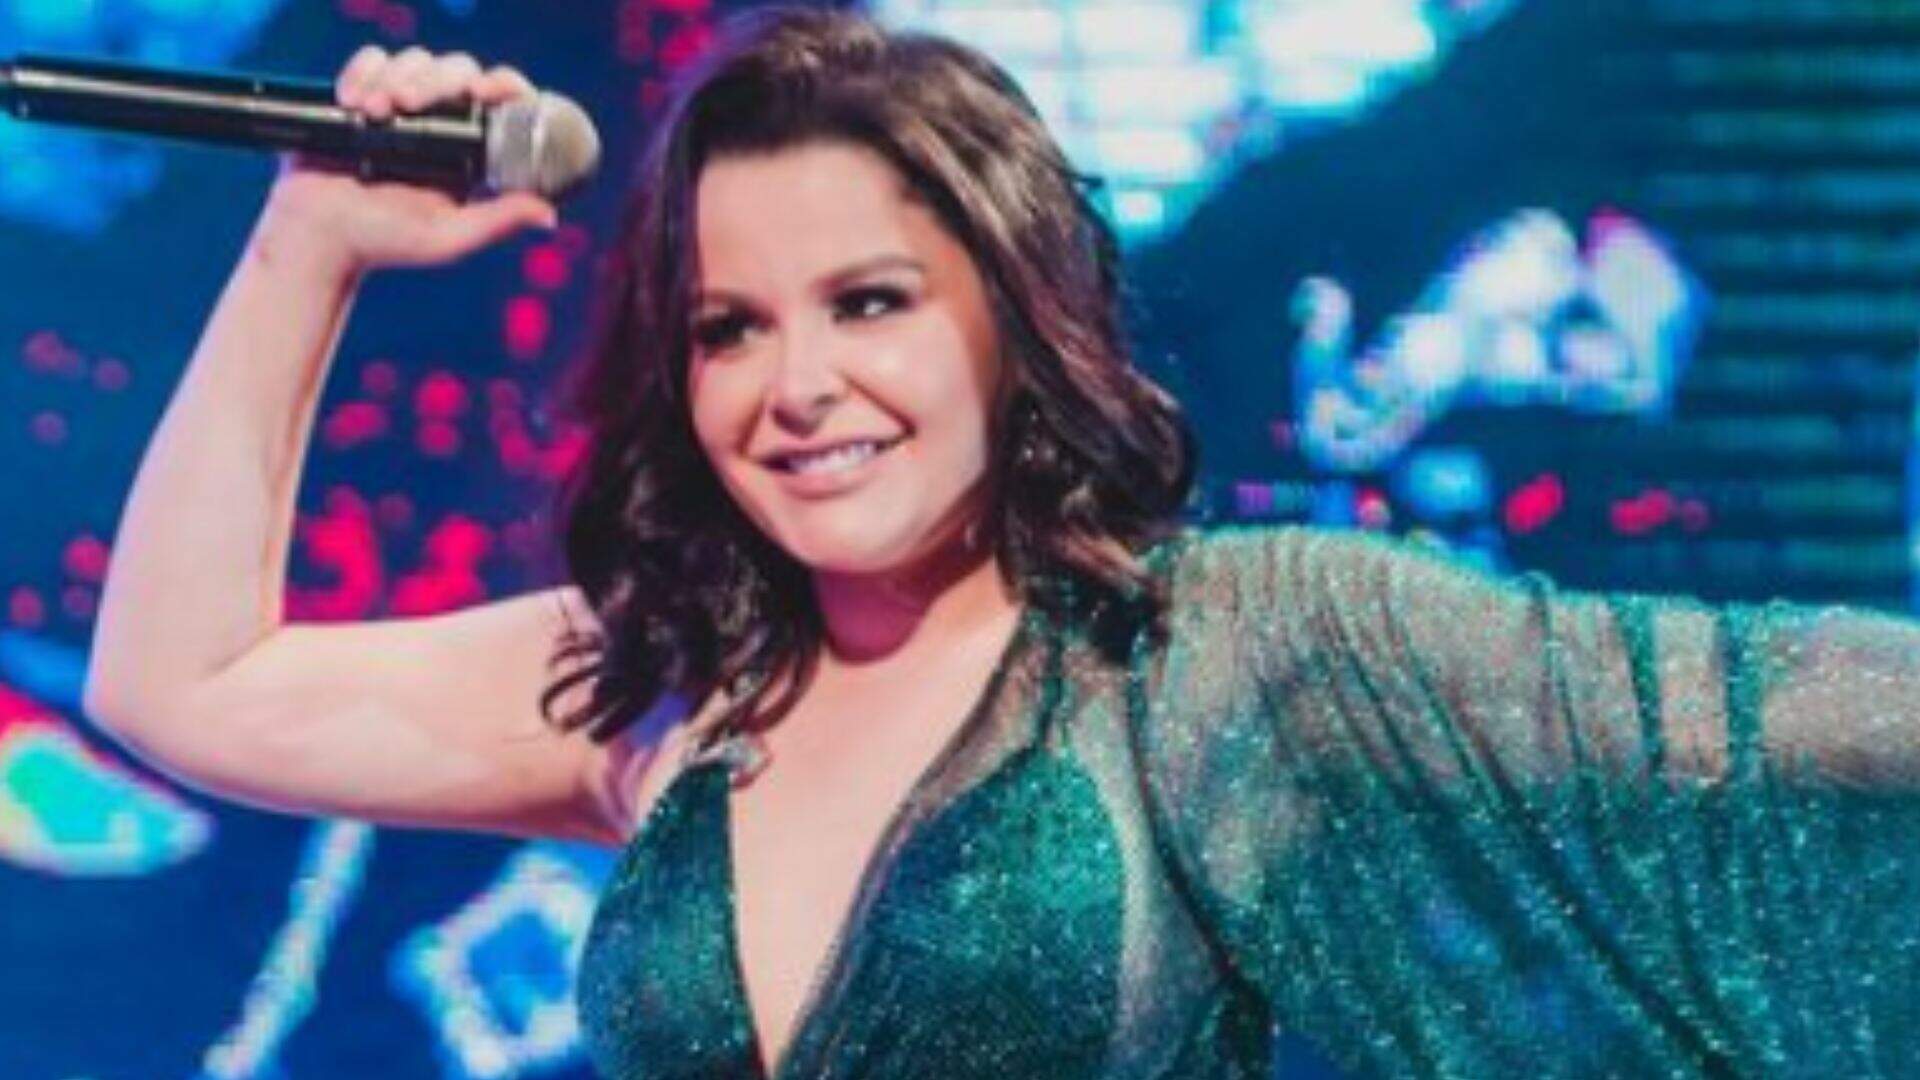 Com vestido ‘subindo’ durante o show, Maraisa exibe boa forma no palco: “Nem dá pra abaixar” - Metropolitana FM